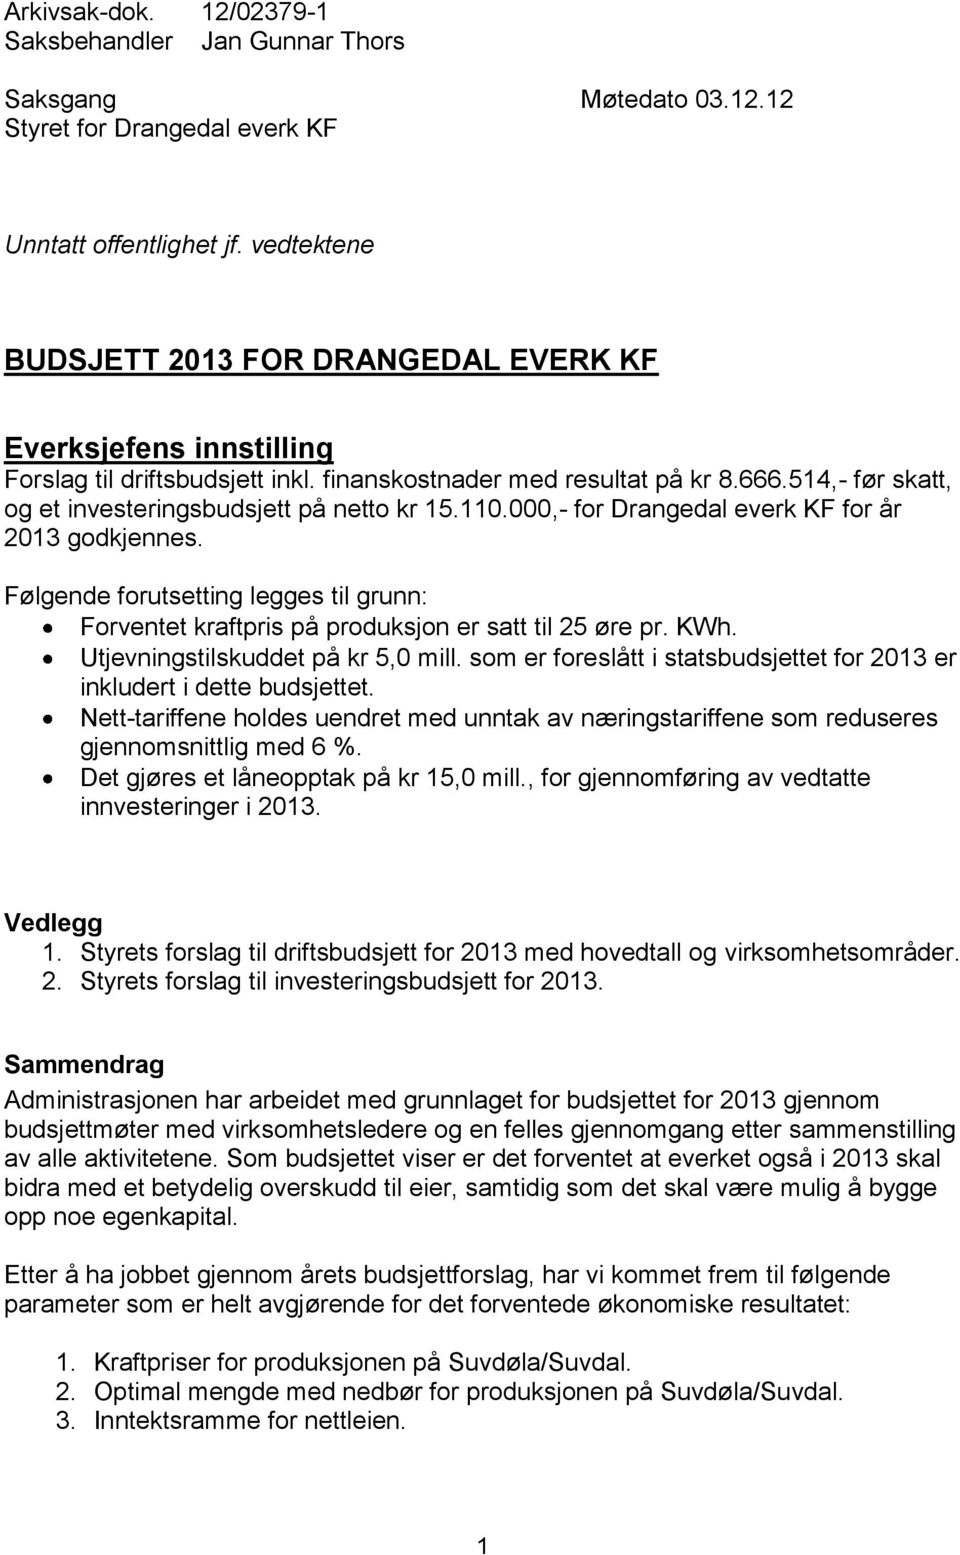 514,- før skatt, og et investeringsbudsjett på netto kr 15.110.000,- for Drangedal everk KF for år 2013 godkjennes.